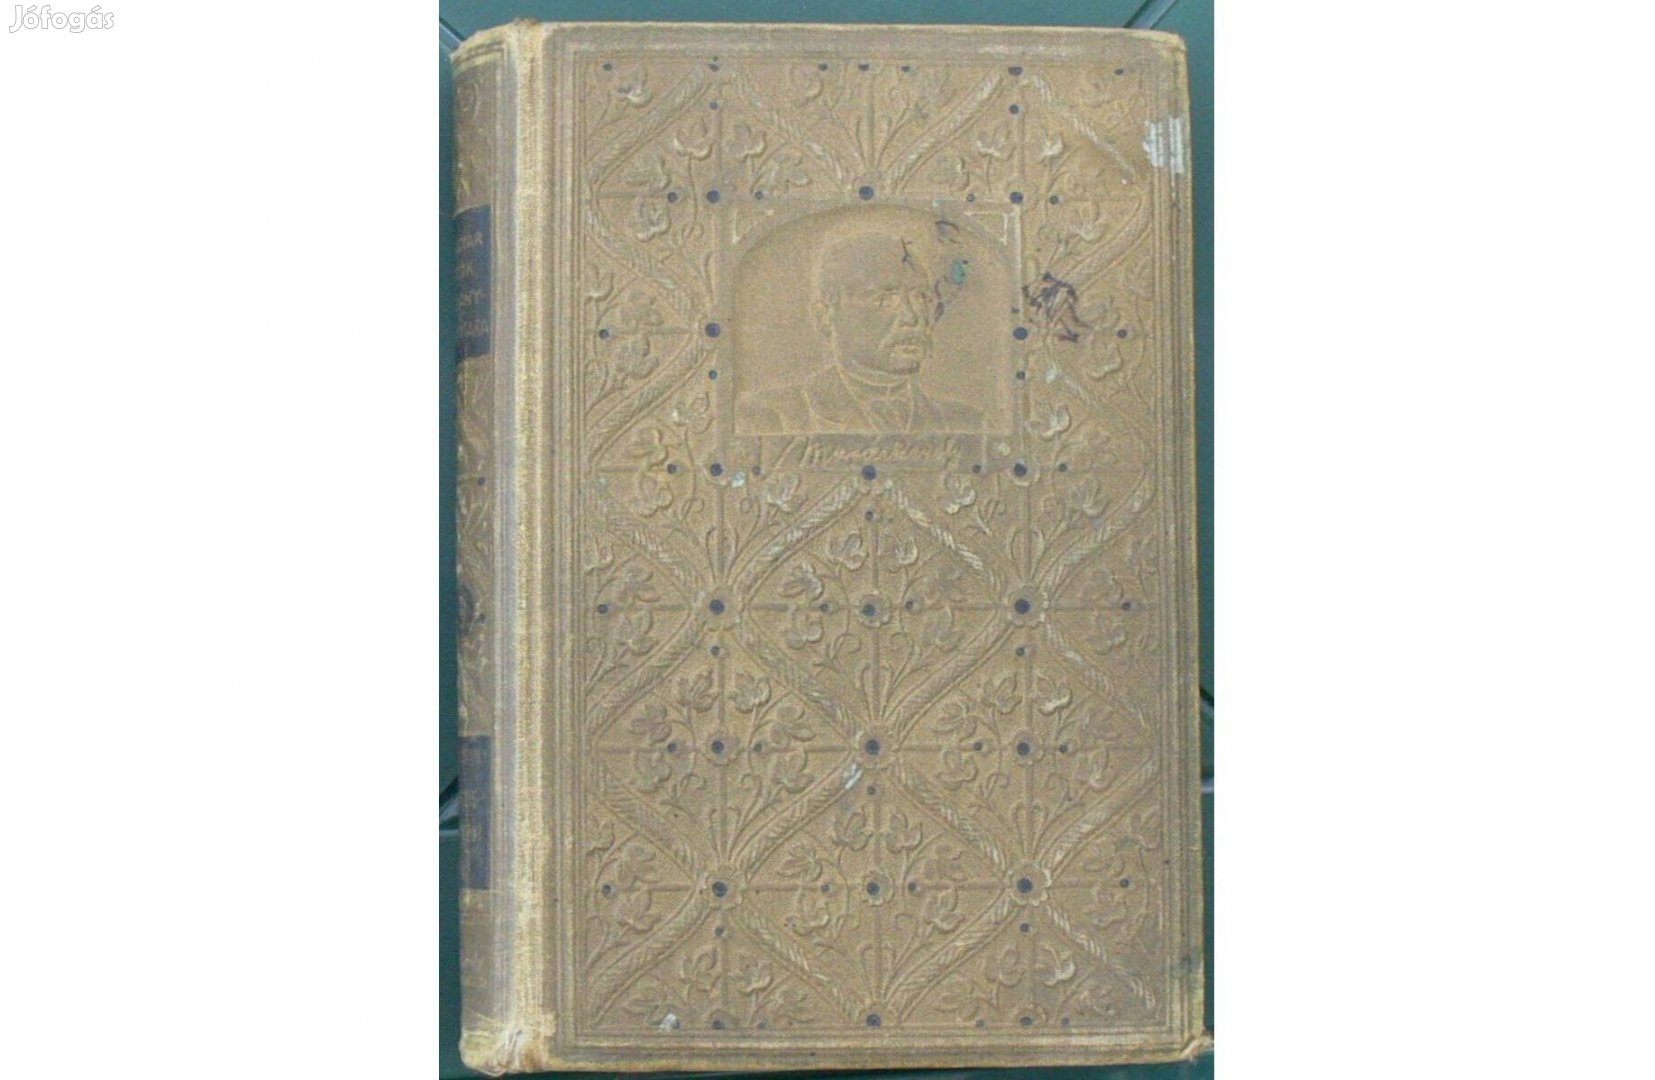 Murai Károly - Eljegyzés menyasszony nélkül, 1908